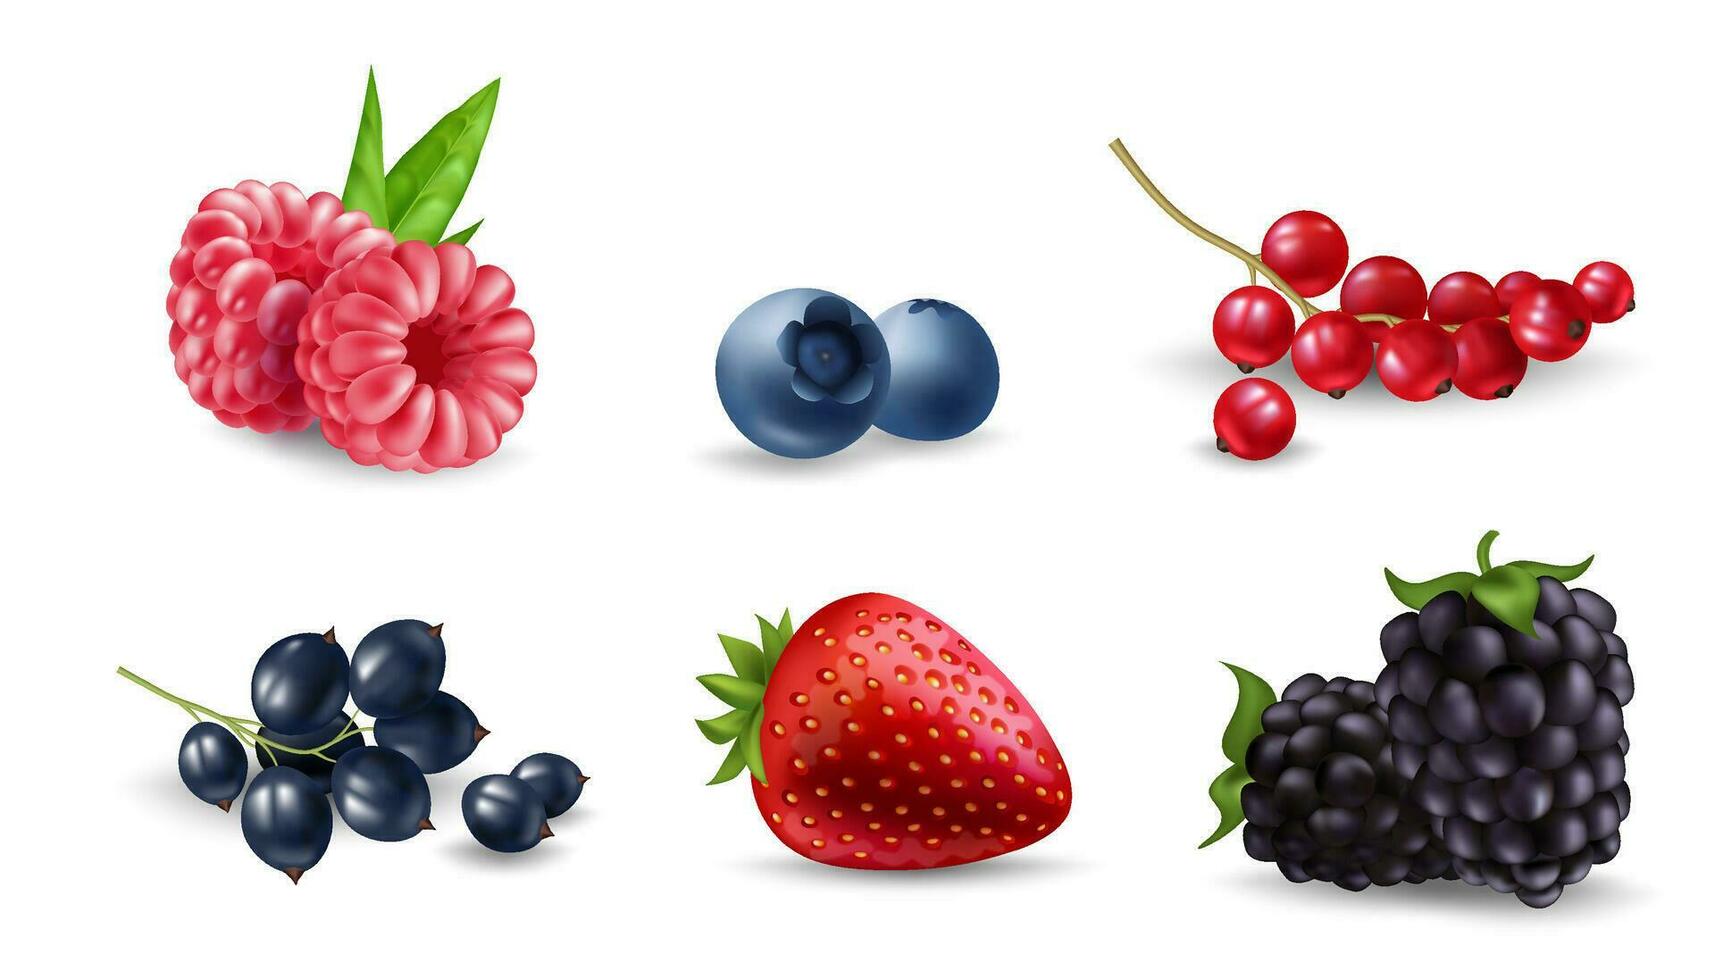 färsk och realistisk bär illustration uppsättning av mogen och saftig blåbär, hallon, björnbär, körsbär, jordgubbe, vinbär, och krusbär. perfekt för mat, hälsa, och natur mönster. vektor